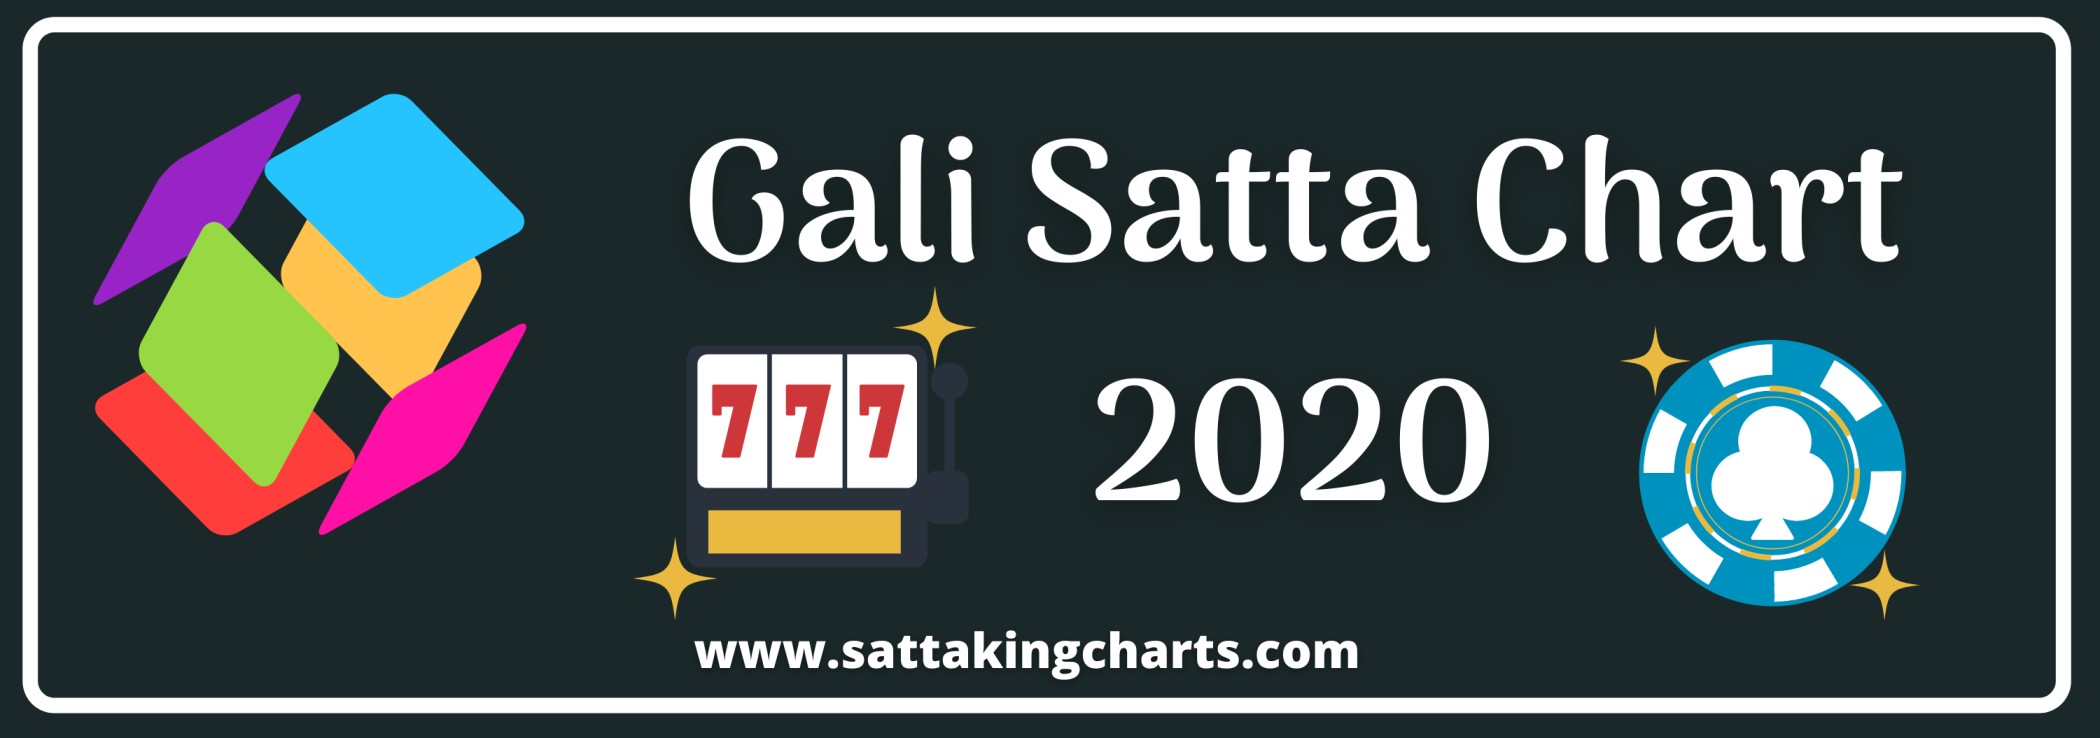 Gali Satta Chart 2020